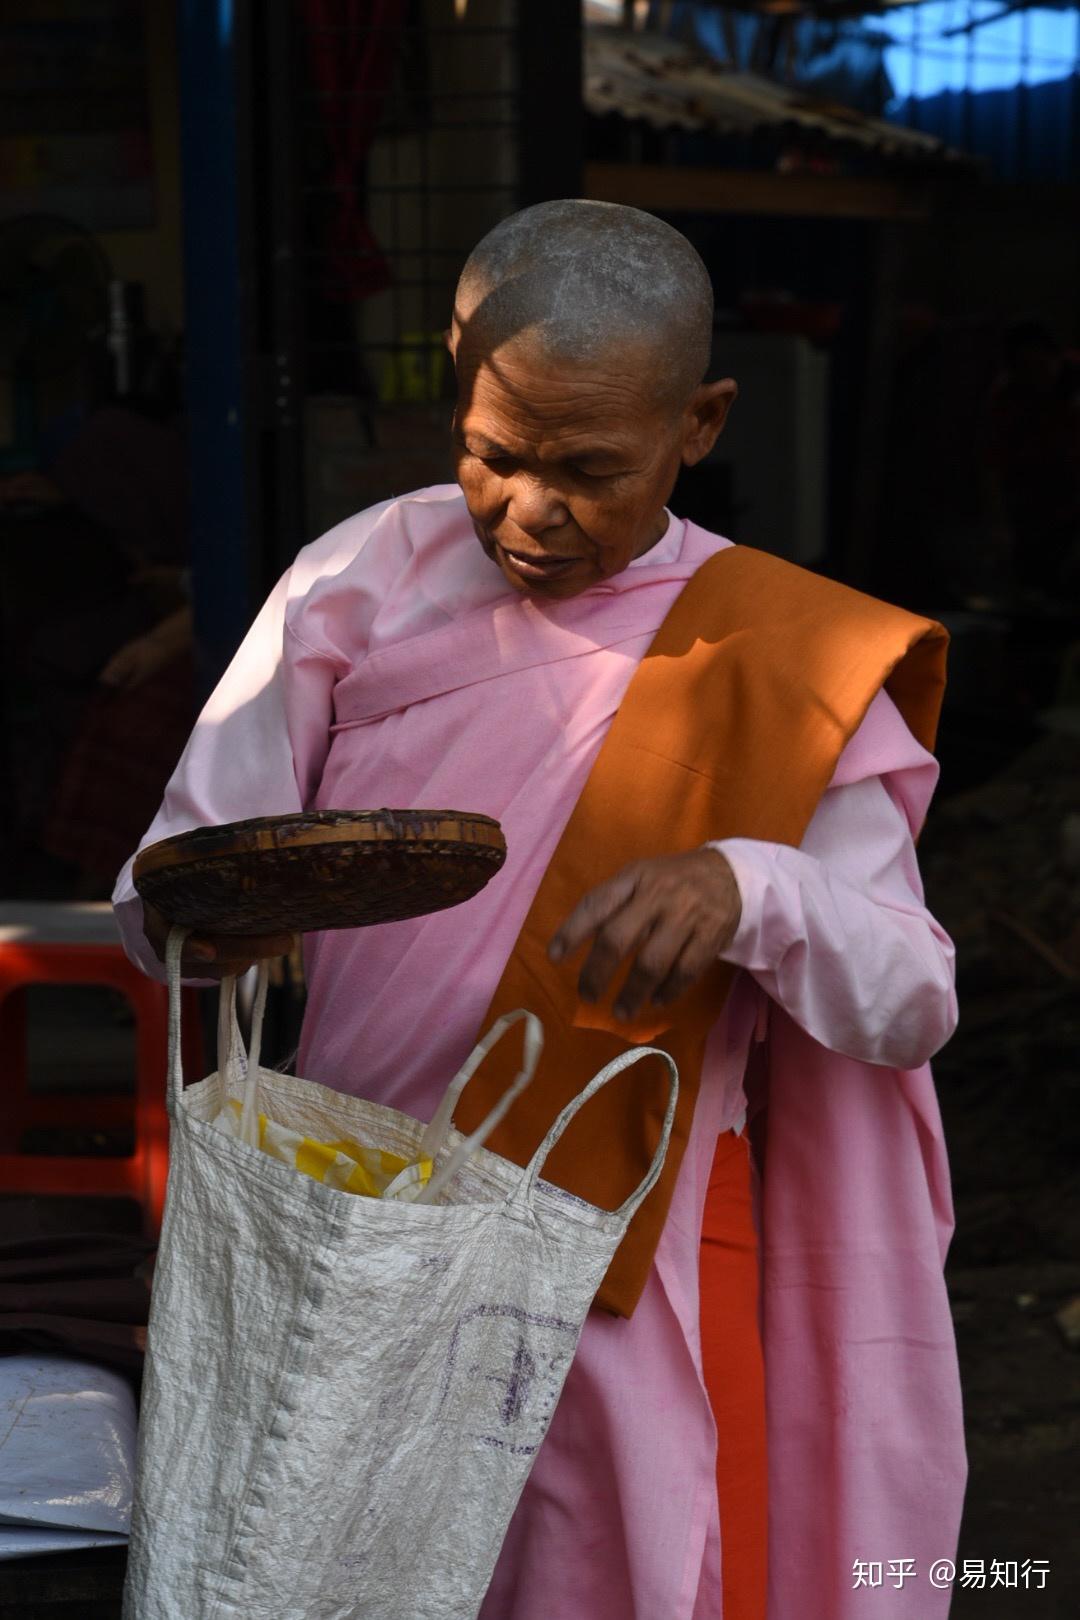 化缘与布施,是缅甸这个佛教国家日常生活的一个主题